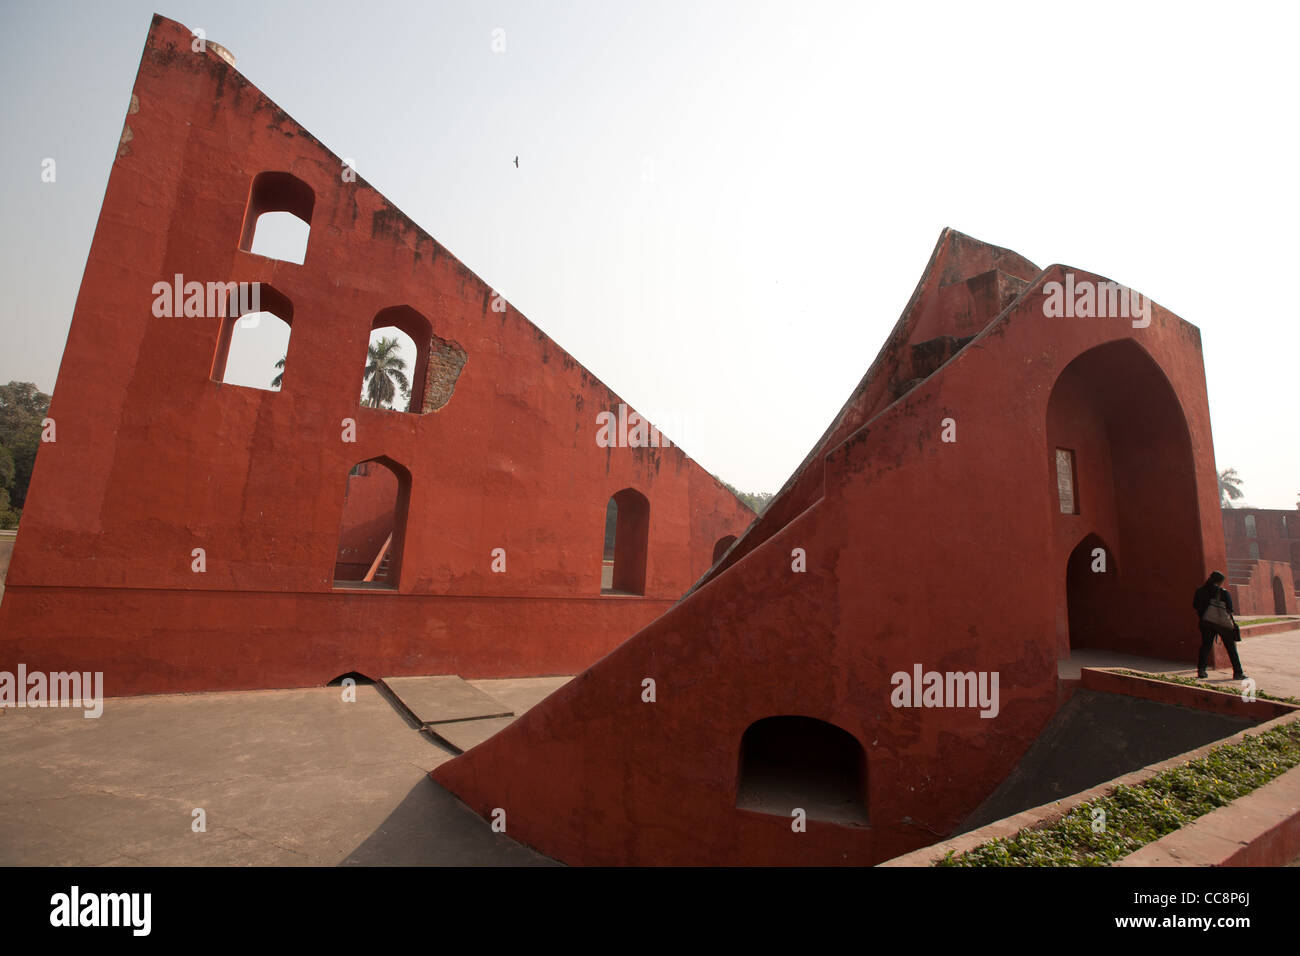 Das Jantar Mantar wissenschaftlichen Observatorium erbaut 1724 von Maharaja Jai Singh II, in der Nähe von Connaught Place in New Delhi, Indien. Stockfoto